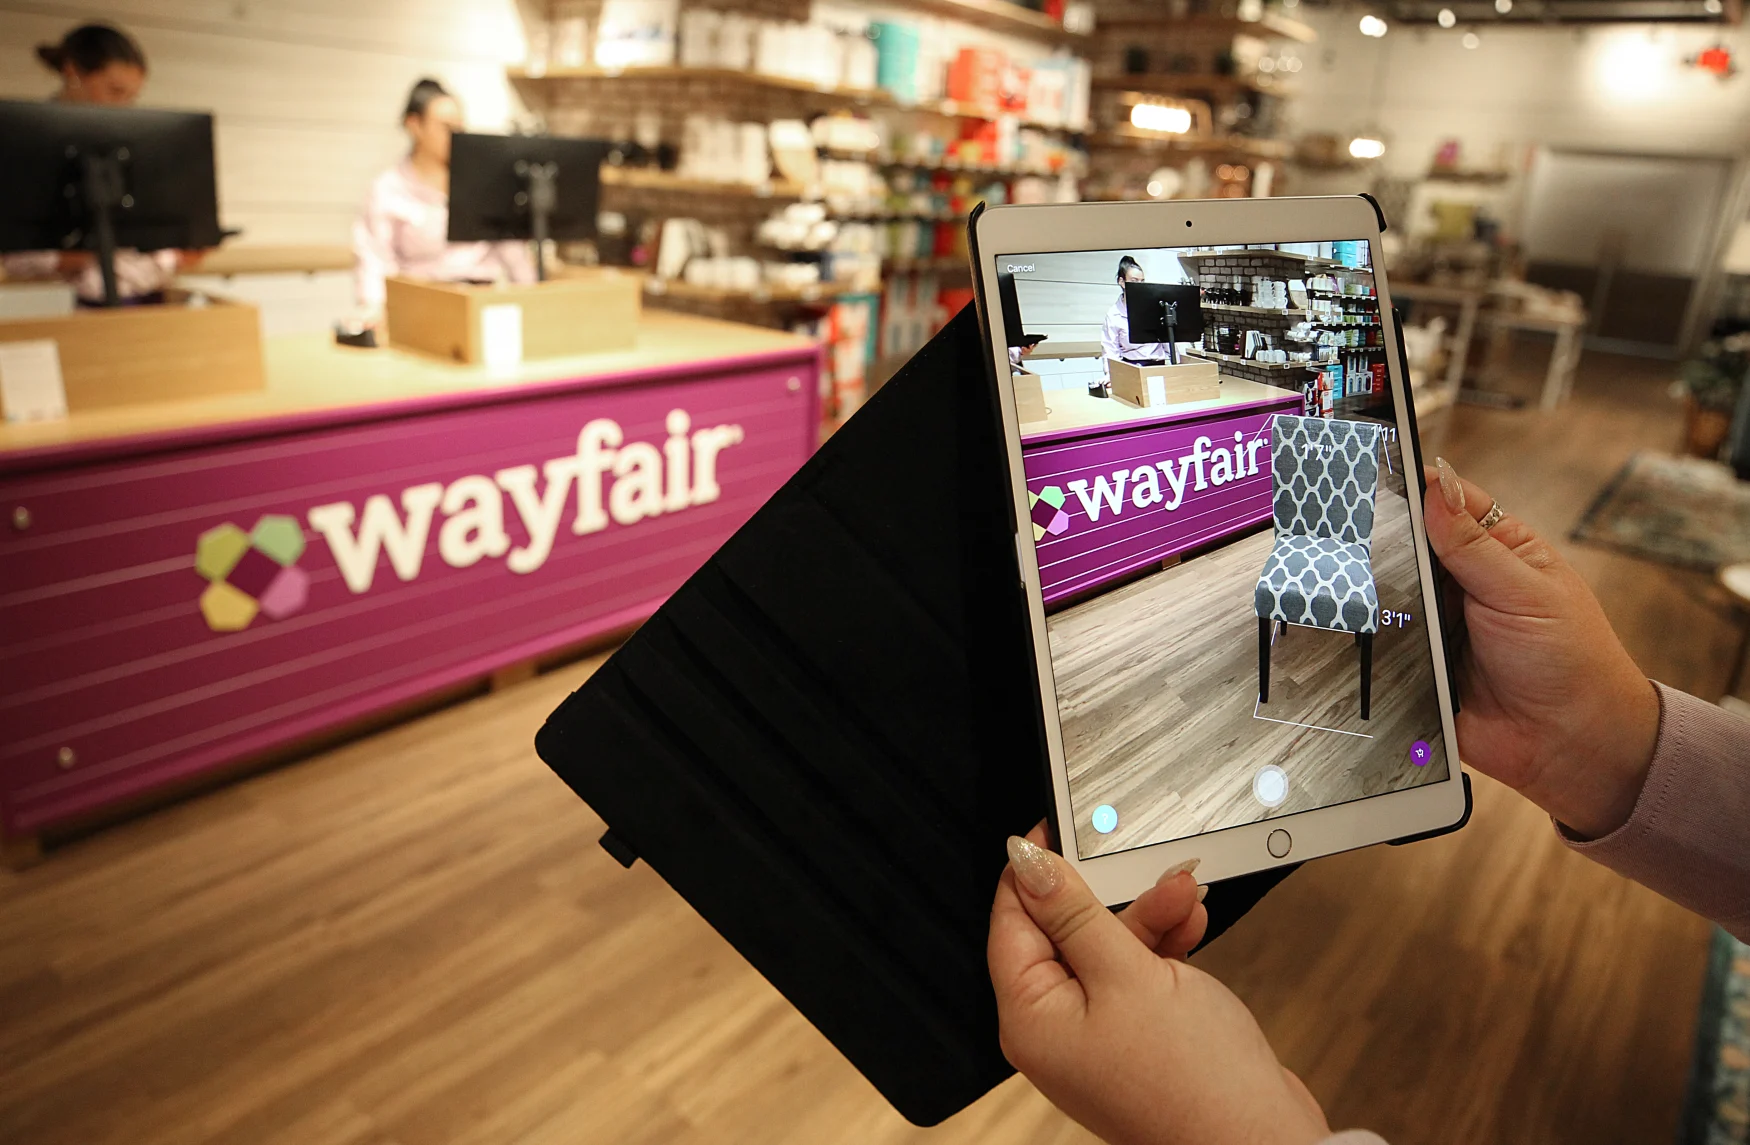 NATICK, MA - 20 AOÛT : Une application de réalité virtuelle est présentée dans le premier magasin Wayfair du centre commercial Natick à Natick, MA, le 20 août 2019. Les acheteurs peuvent enfiler des casques de réalité virtuelle pour voir comment les meubles s'intégreraient dans un espace, en utilisant Wayfairs Outil de planification de salle.  Ils peuvent grimper virtuellement sur une table de salle à manger pour obtenir une vue à 360 degrés d'une pièce rendue numériquement, puis échanger des chaises, des lustres et des œuvres d'art sur les murs virtuels.  Ce n'est qu'un exemple de la façon dont le géant du commerce électronique basé à Boston a utilisé son ADN numérique pour créer son premier magasin physique.  Il ouvre mercredi dans le centre commercial Natick.  Les informations sur les produits, y compris les prix et les évaluations des clients, sont affichées sur des écrans qui se mettent à jour en temps réel pour refléter les changements de prix en ligne.  Les employés portent des iPads avec un outil de réalité augmentée qui fait apparaître les meubles dans un cadre 3D, ou ils peuvent prendre une photo d'un article dans le magasin et en trouver des dizaines en ligne.  (Photo de Suzanne Kreiter/Le Boston Globe via Getty Images)